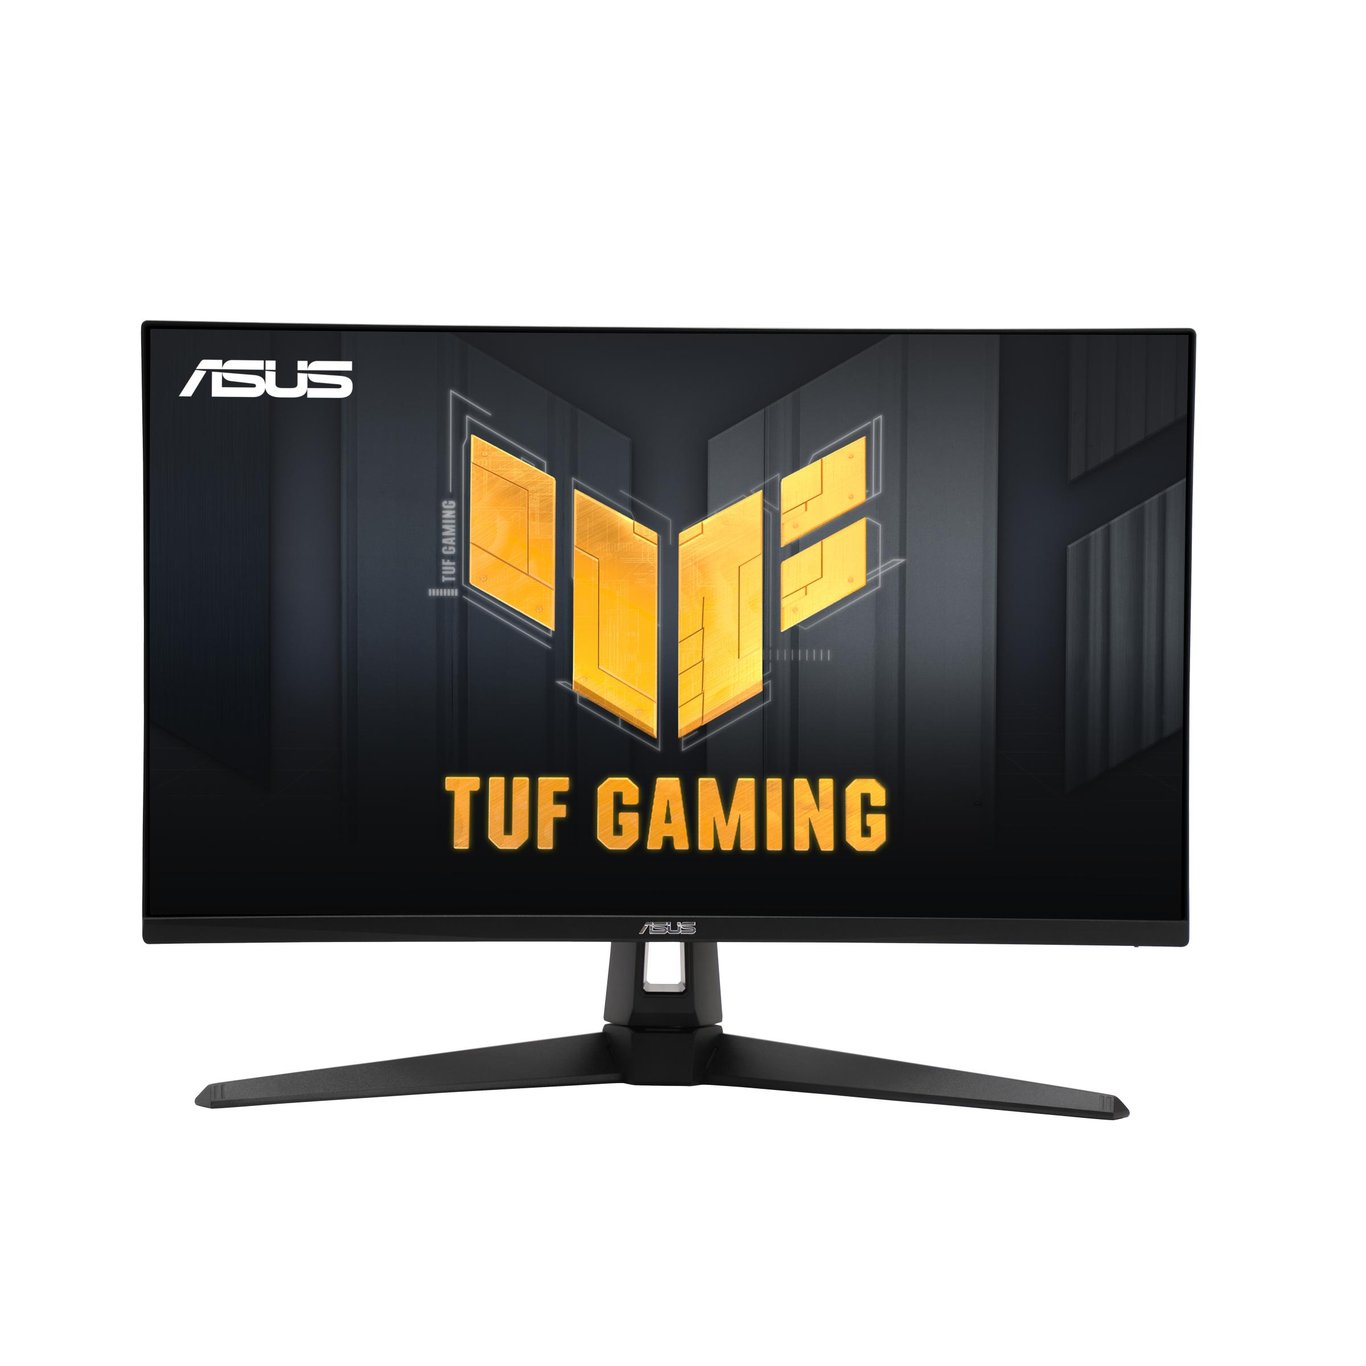 【限時優惠】ASUS 華碩 TUF Gaming VG27AC1A 電競顯示器 (27 吋 WQHD 170Hz IPS HDR G-Sync Compatible) - 2560 x 1440